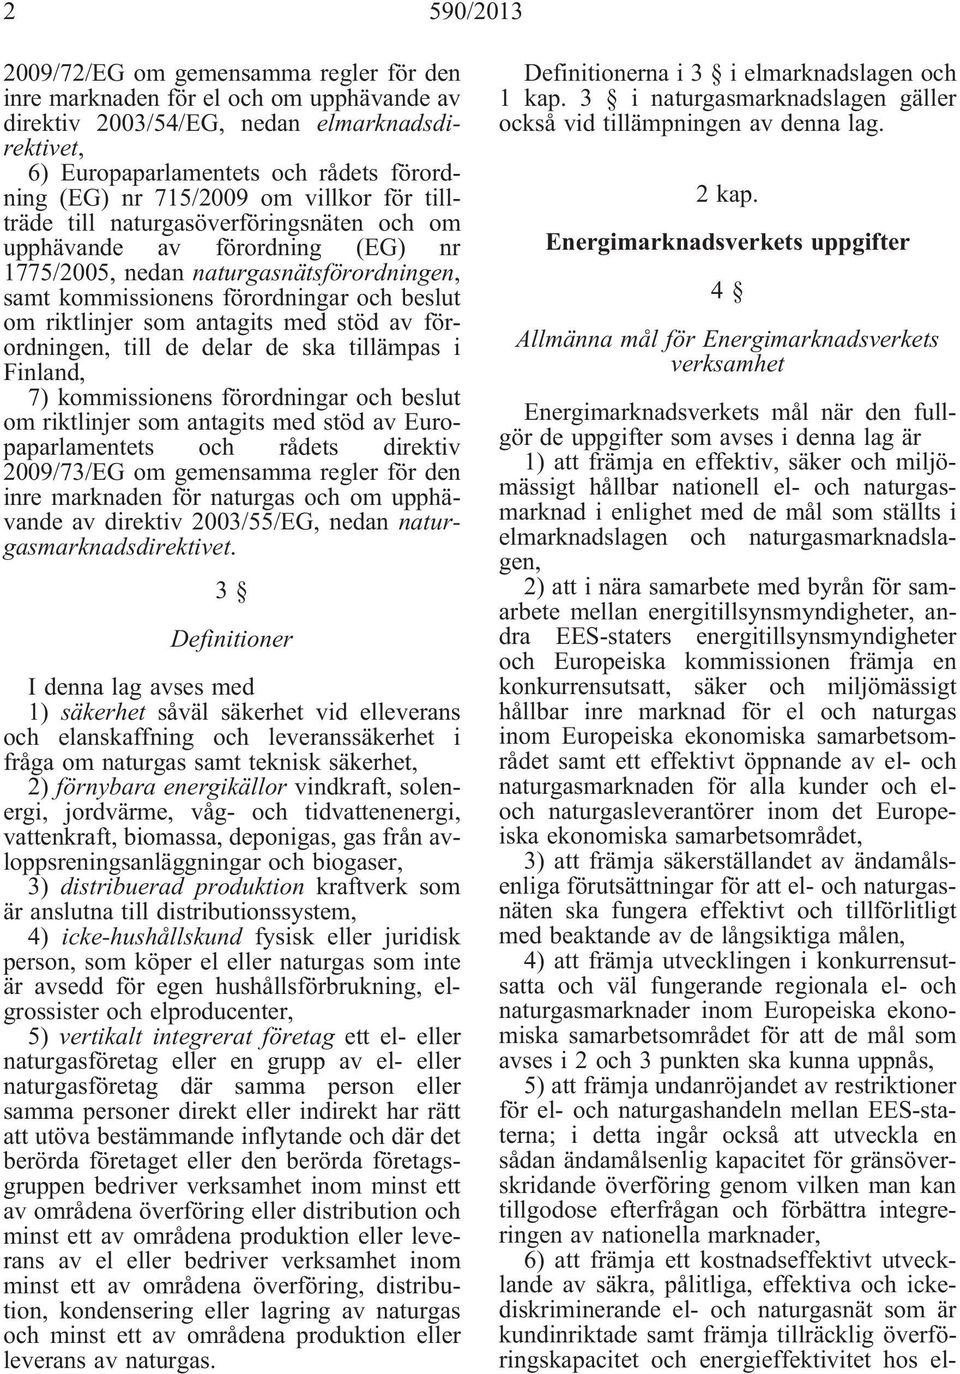 riktlinjer som antagits med stöd av förordningen, till de delar de ska tillämpas i Finland, 7) kommissionens förordningar och beslut om riktlinjer som antagits med stöd av Europaparlamentets och